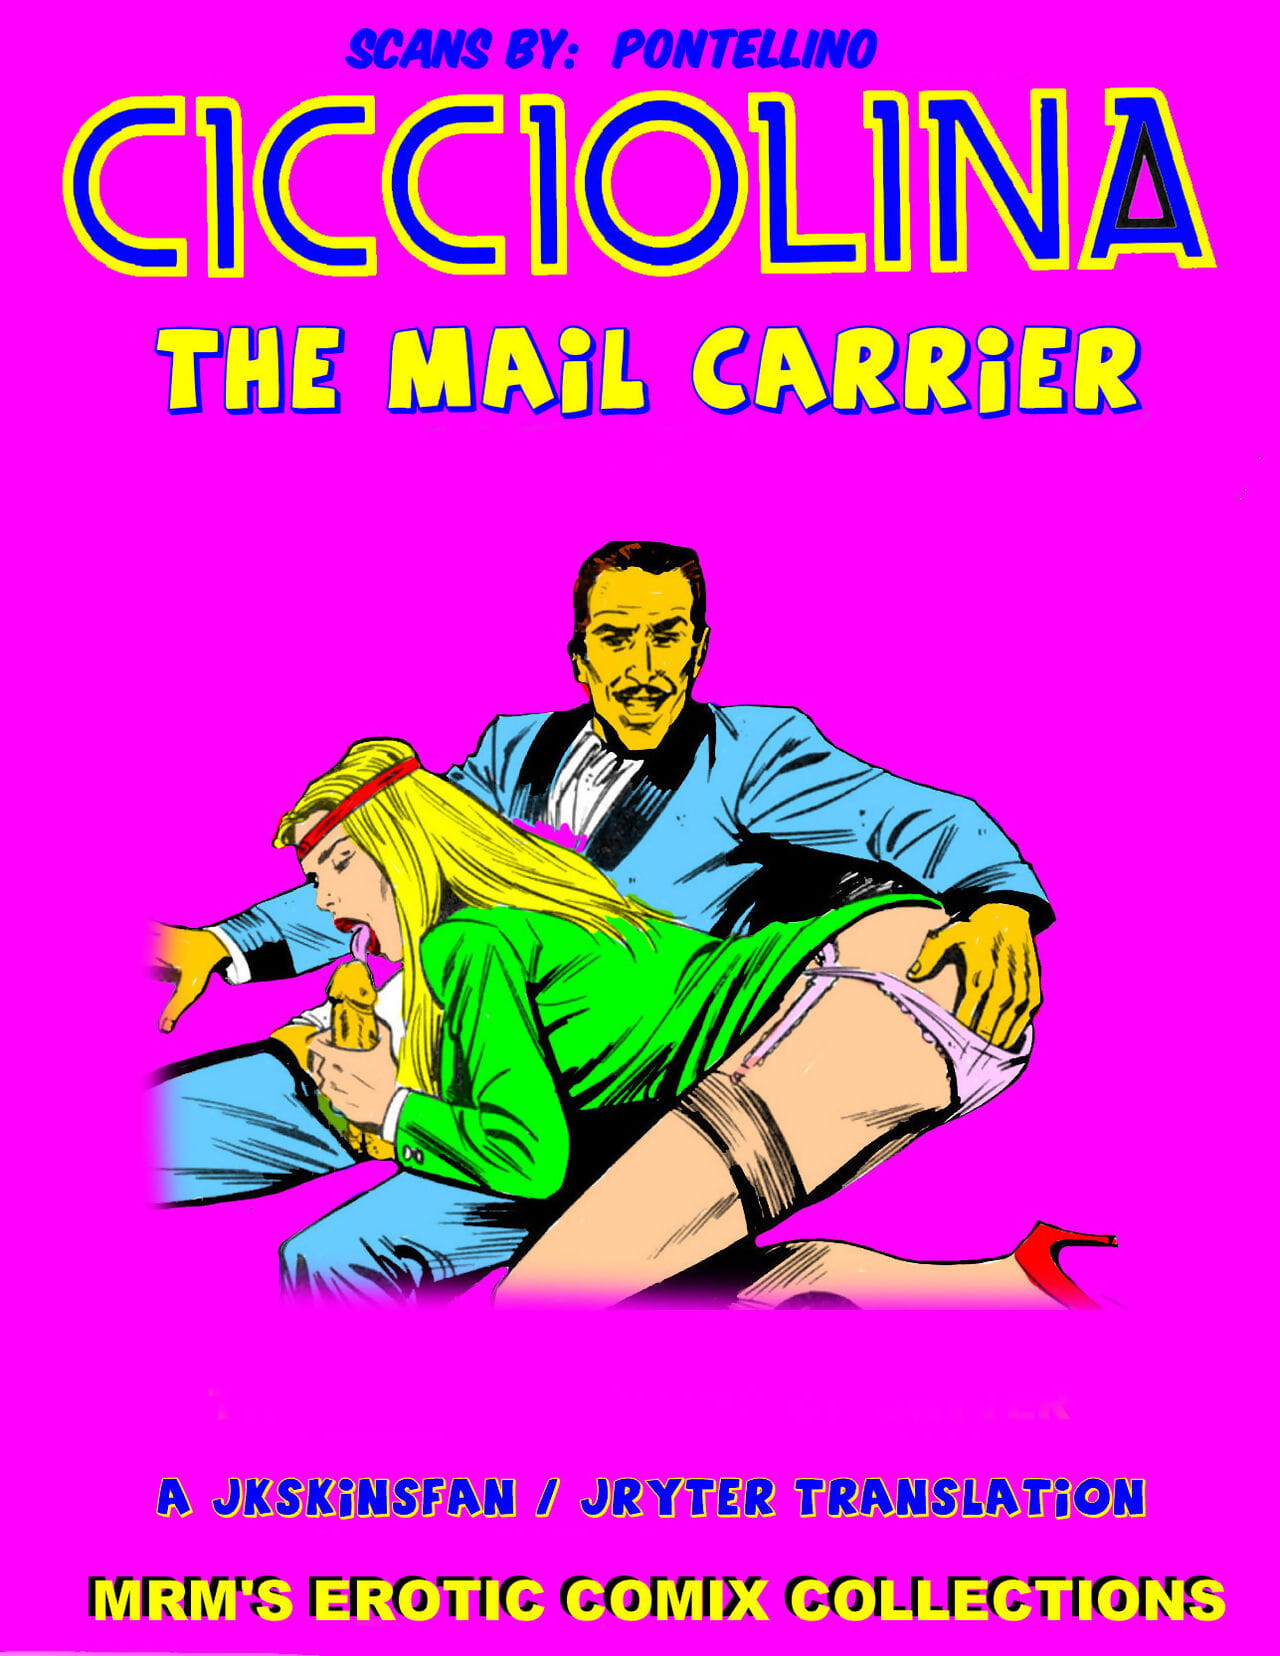 CICCIOLINA - THE MAIL CARRIER - A JKSKINSFAN / JRYTER TRANSLATION page 1